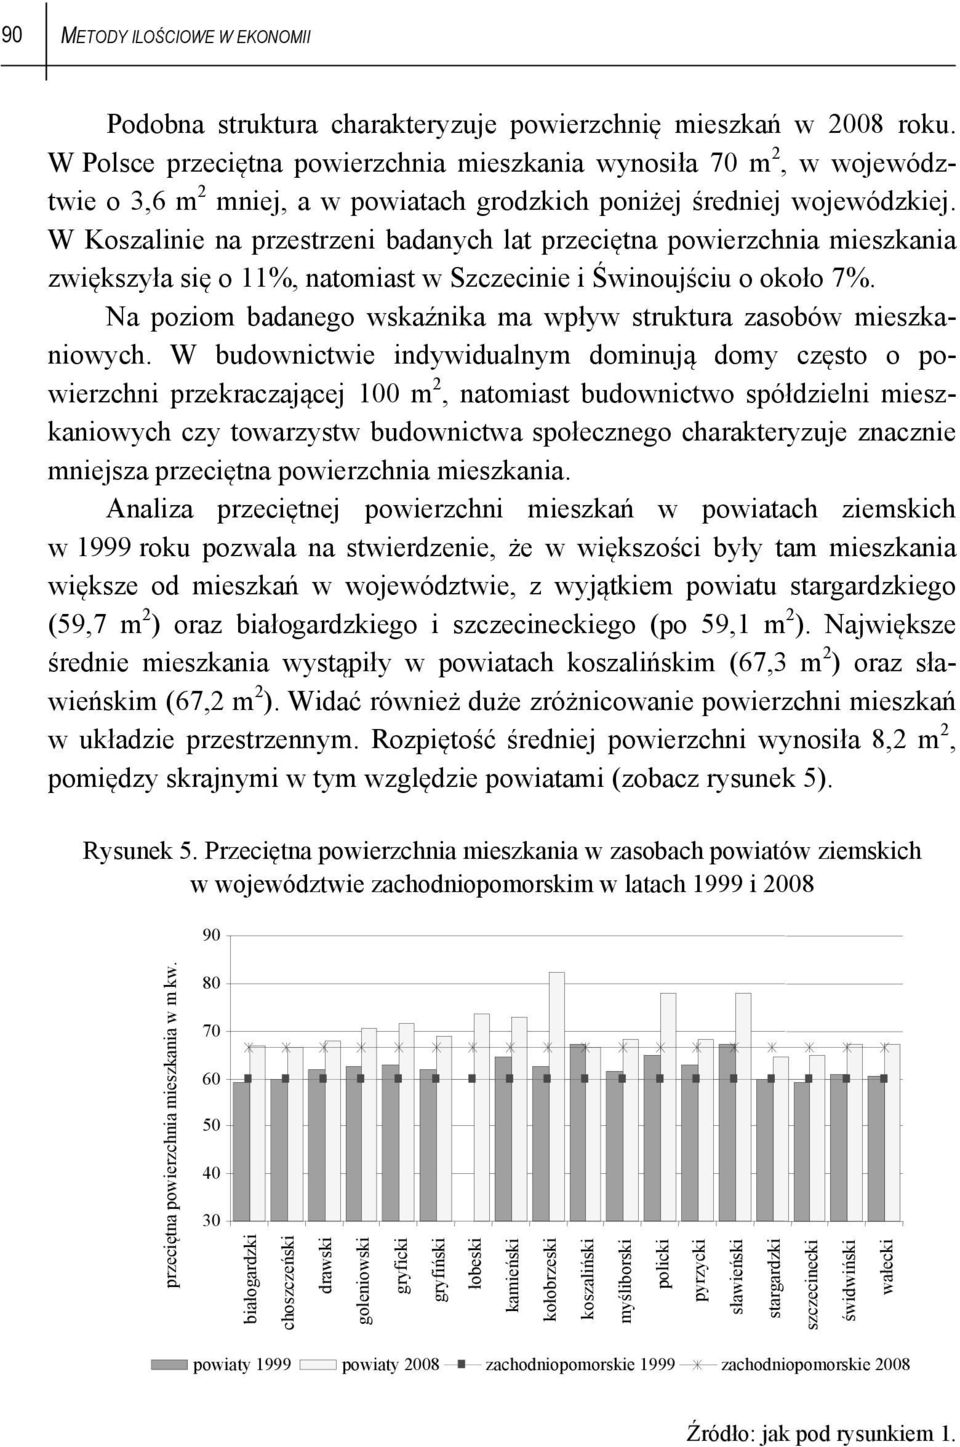 W Koszalinie na przestrzeni badanych lat przeciętna powierzchnia mieszkania zwiększyła się o 11%, natomiast w Szczecinie i Świnoujściu o około 7%.